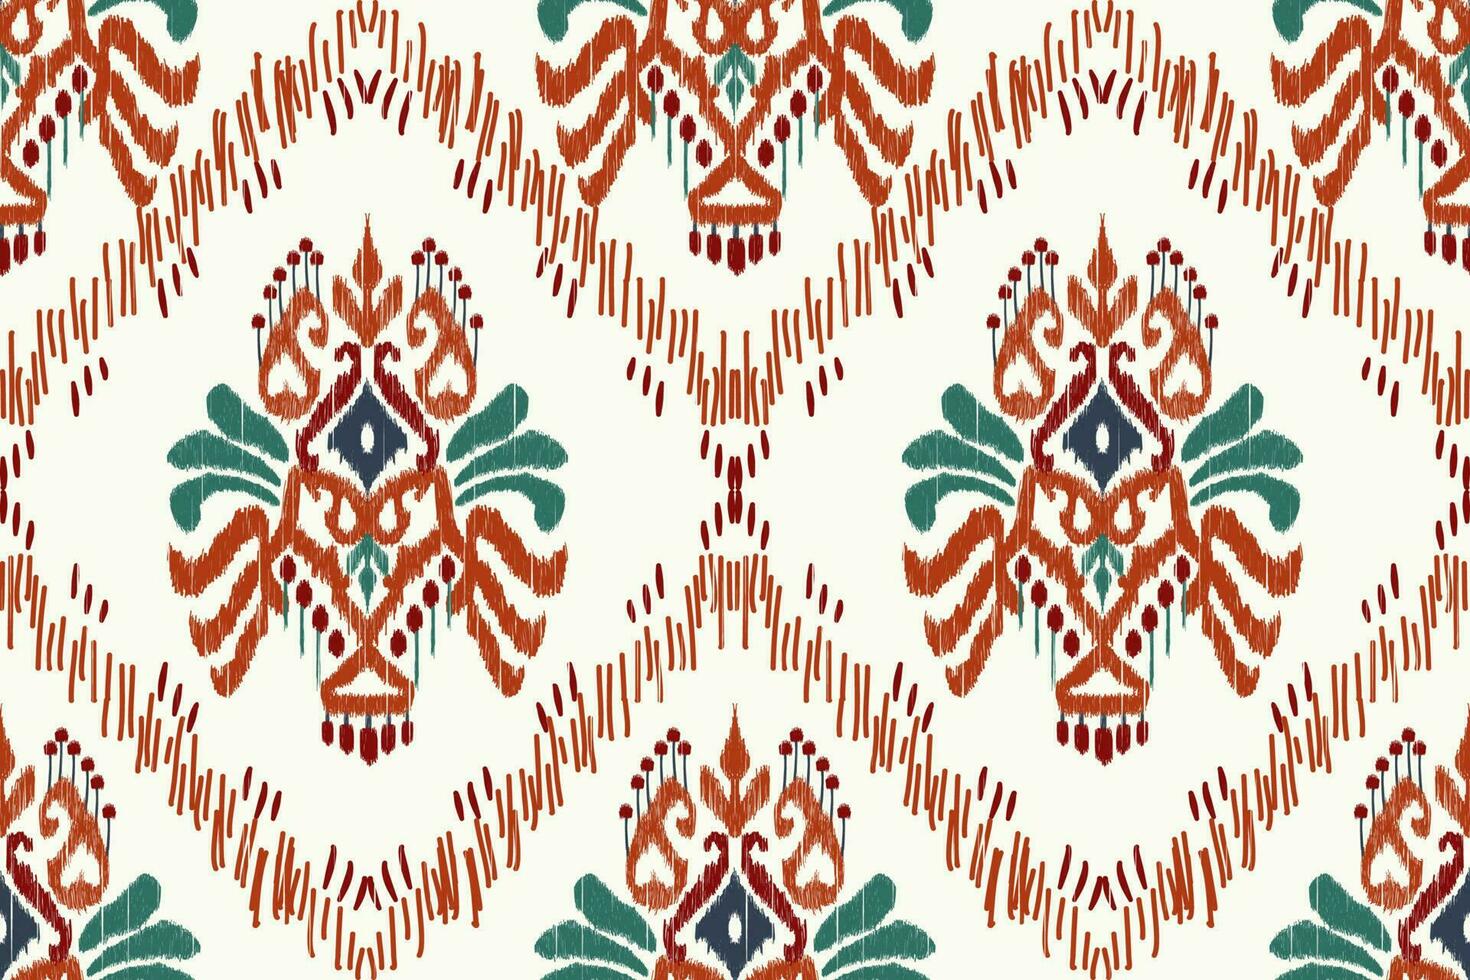 ikat blommig paisley broderi på vit bakgrund.ikat etnisk orientalisk sömlös mönster traditionell.aztec stil abstrakt vektor illustration.design för textur, tyg, kläder, inslagning, dekoration.